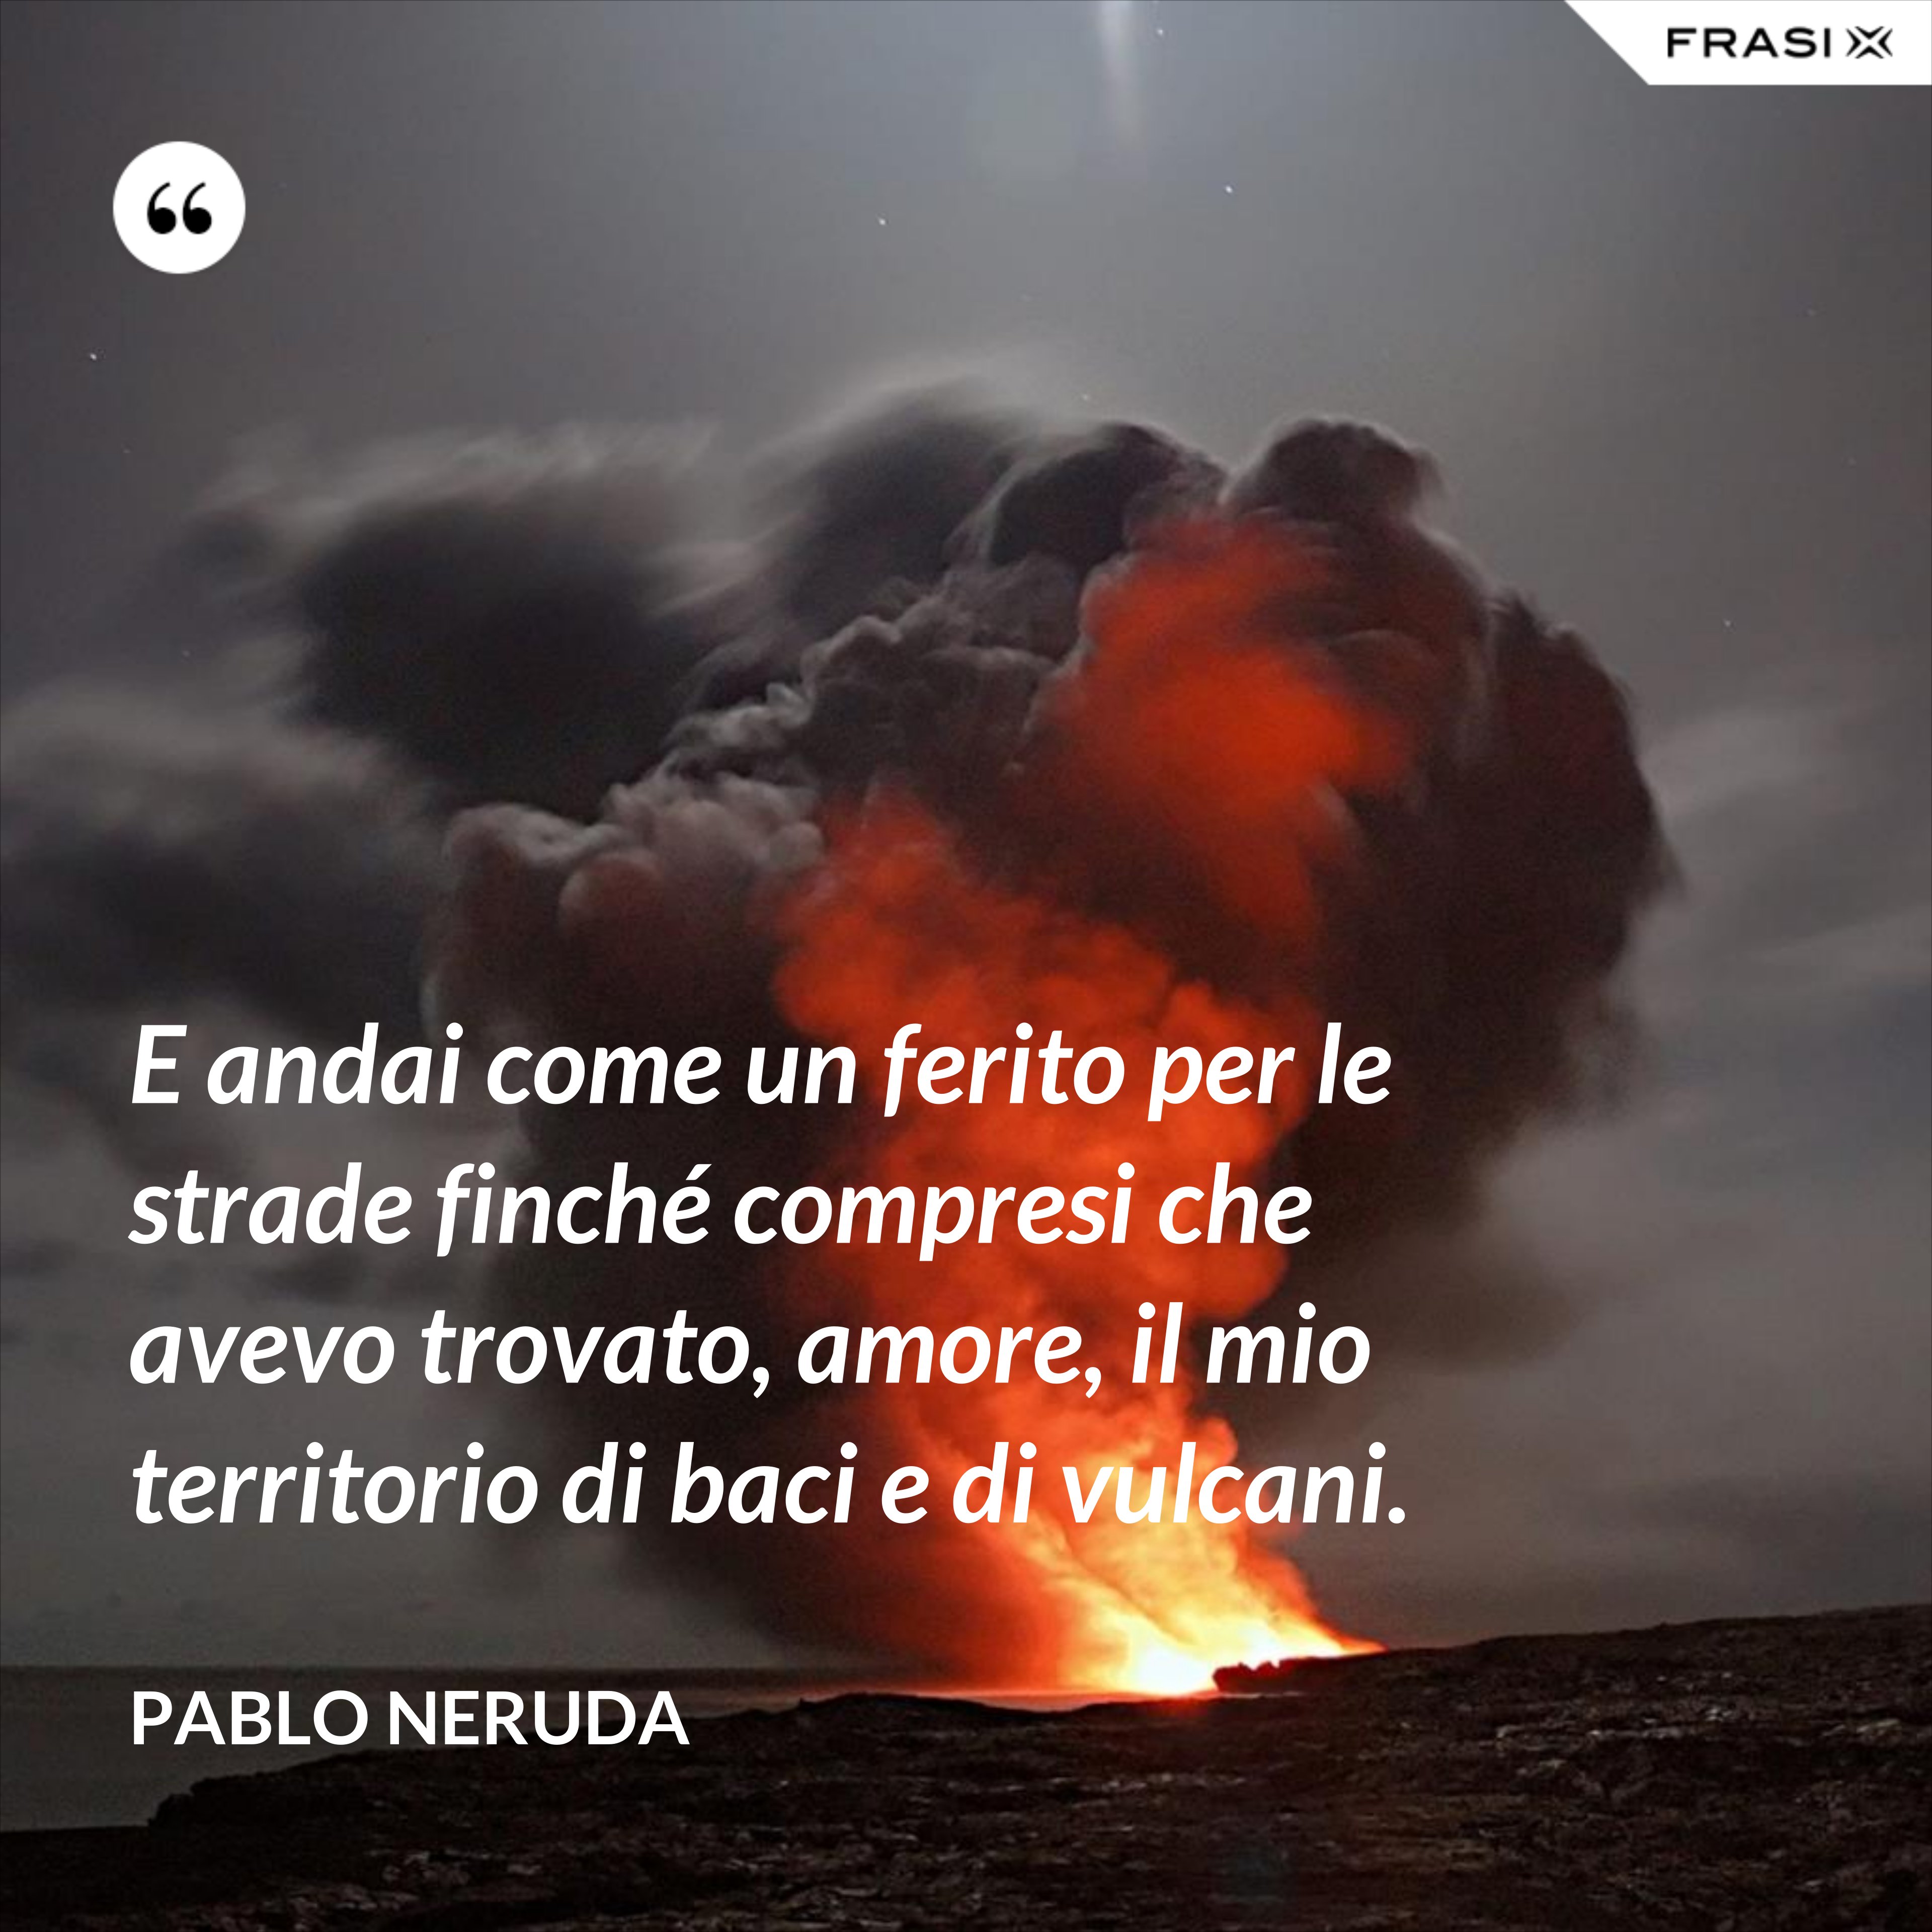 E andai come un ferito per le strade finché compresi che avevo trovato, amore, il mio territorio di baci e di vulcani. - Pablo Neruda